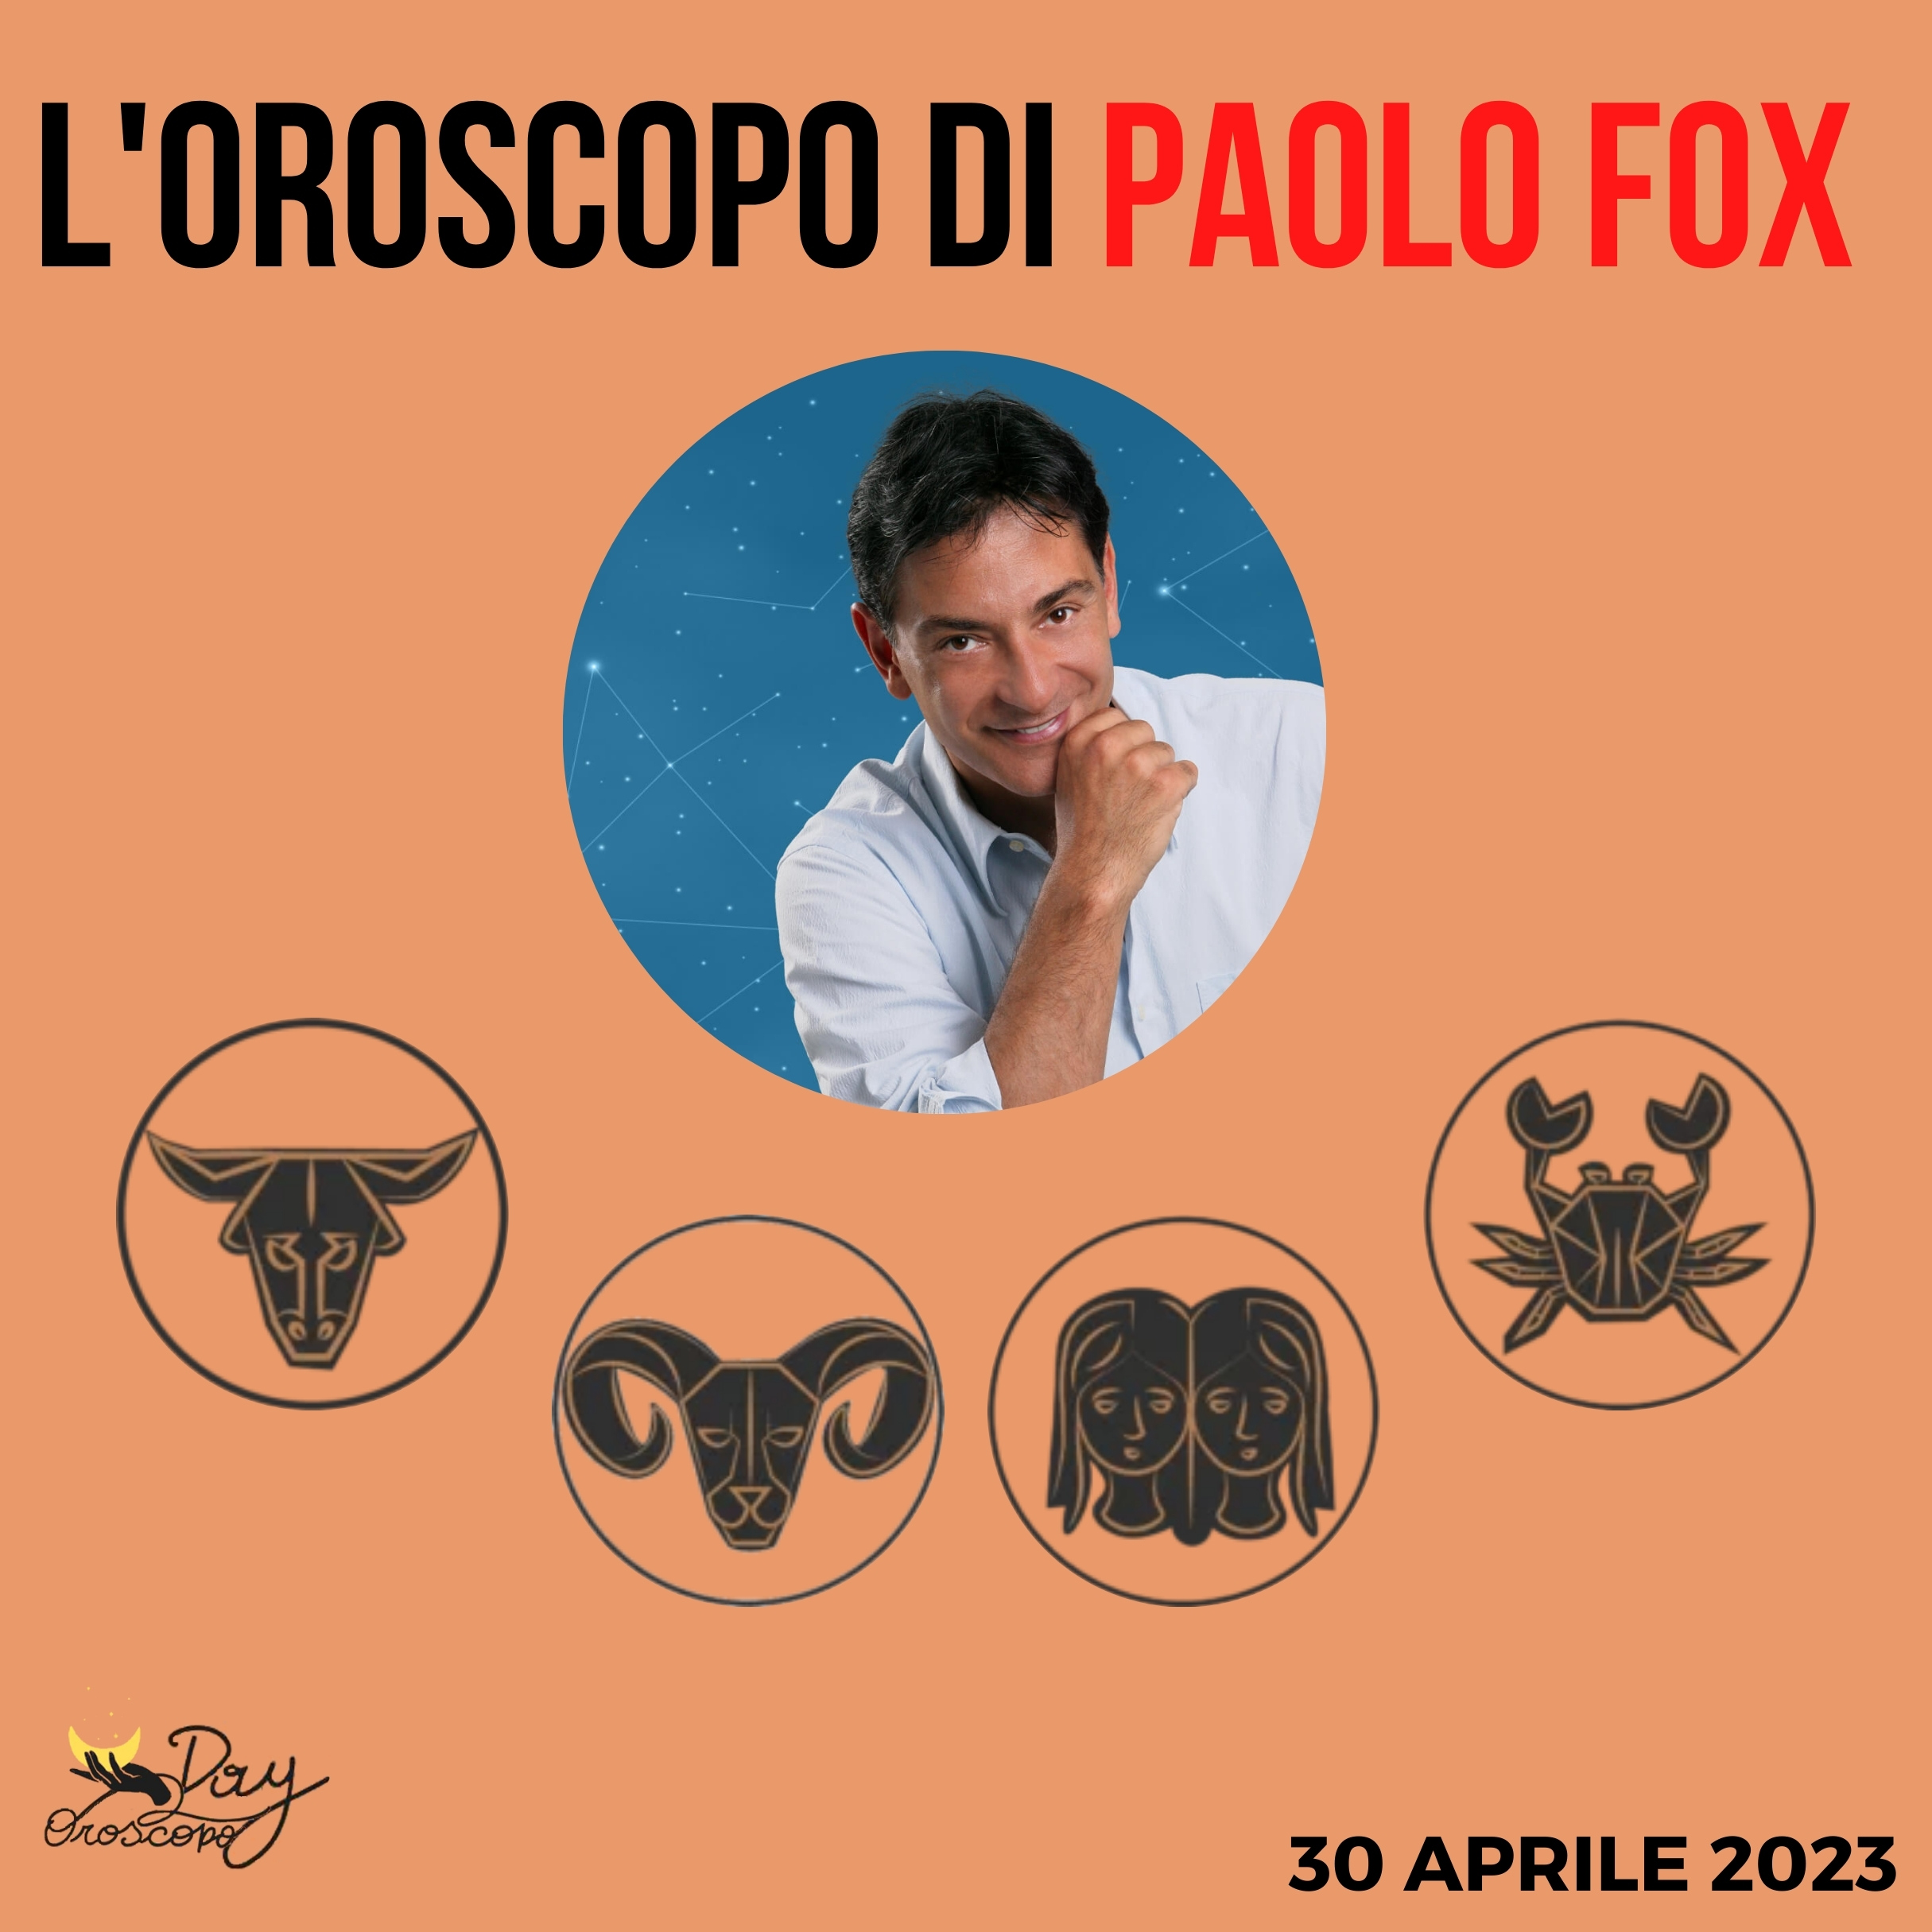 Oroscopo oggi domani Paolo Fox 30 aprile Toro Ariete Gemelli Cancro